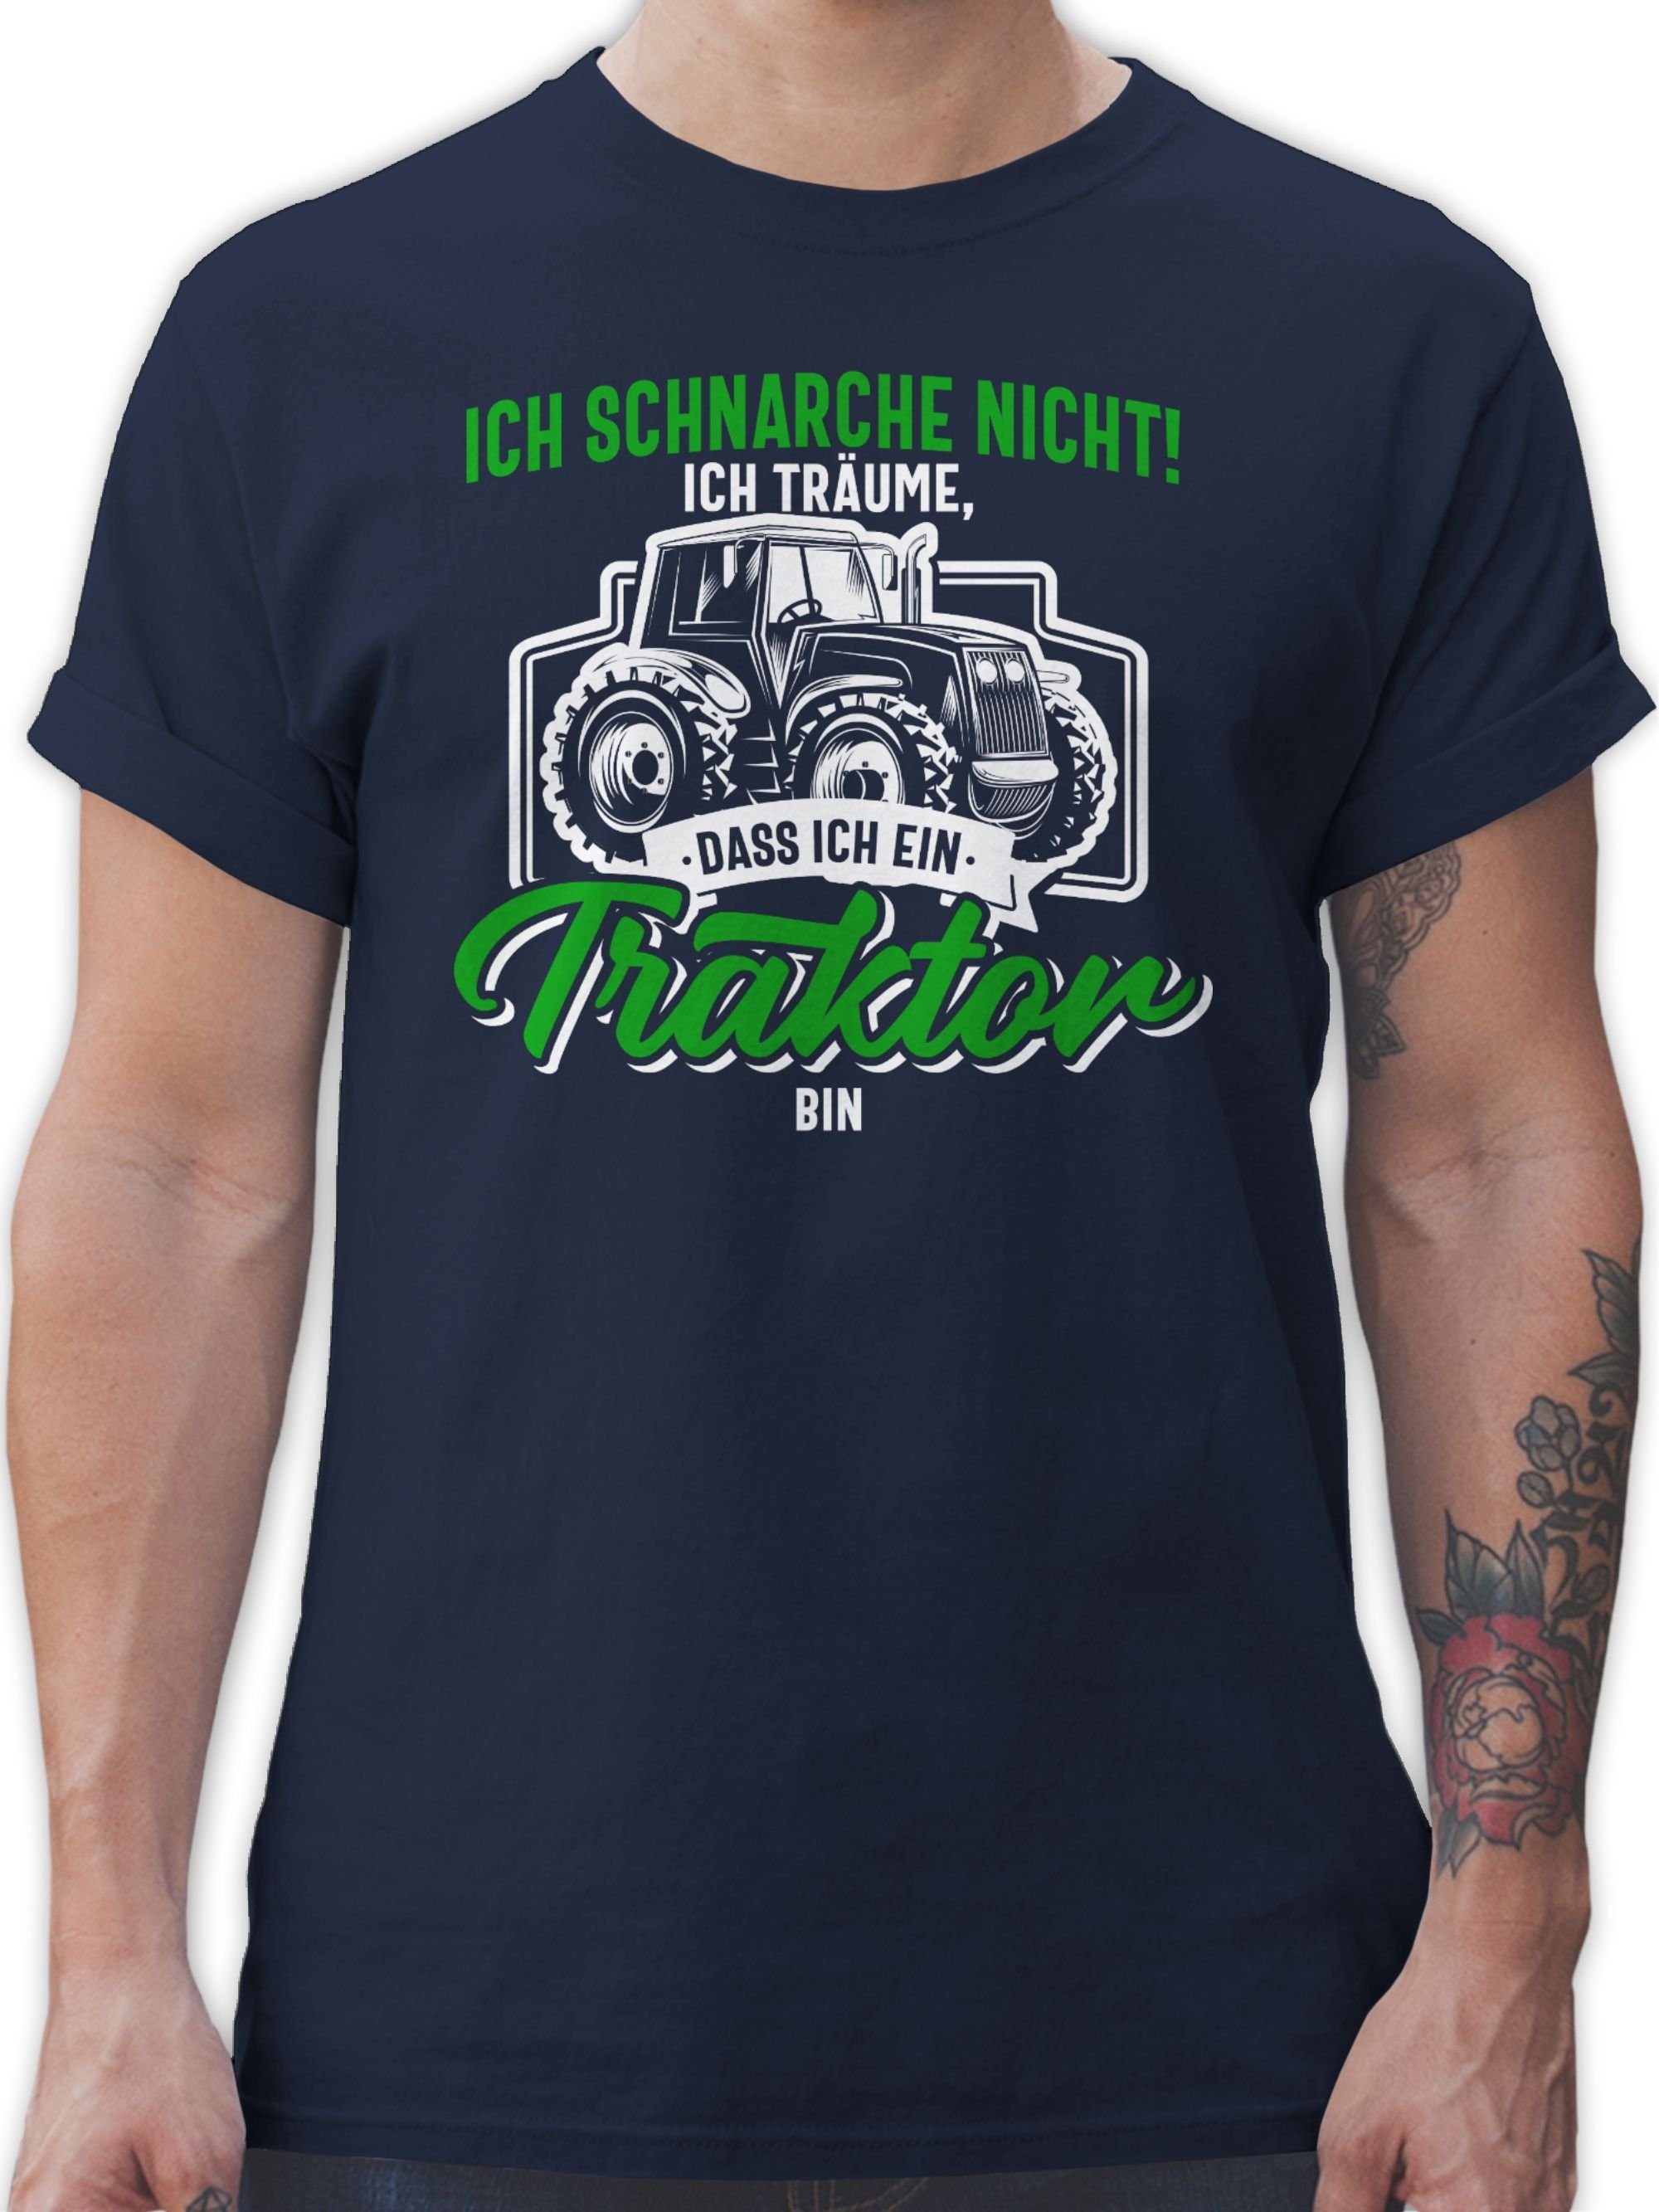 träume ein T-Shirt bin nicht dass Traktor Shirtracer Ich ich Traktor schnarche Blau 03 bunt Navy weiß ich